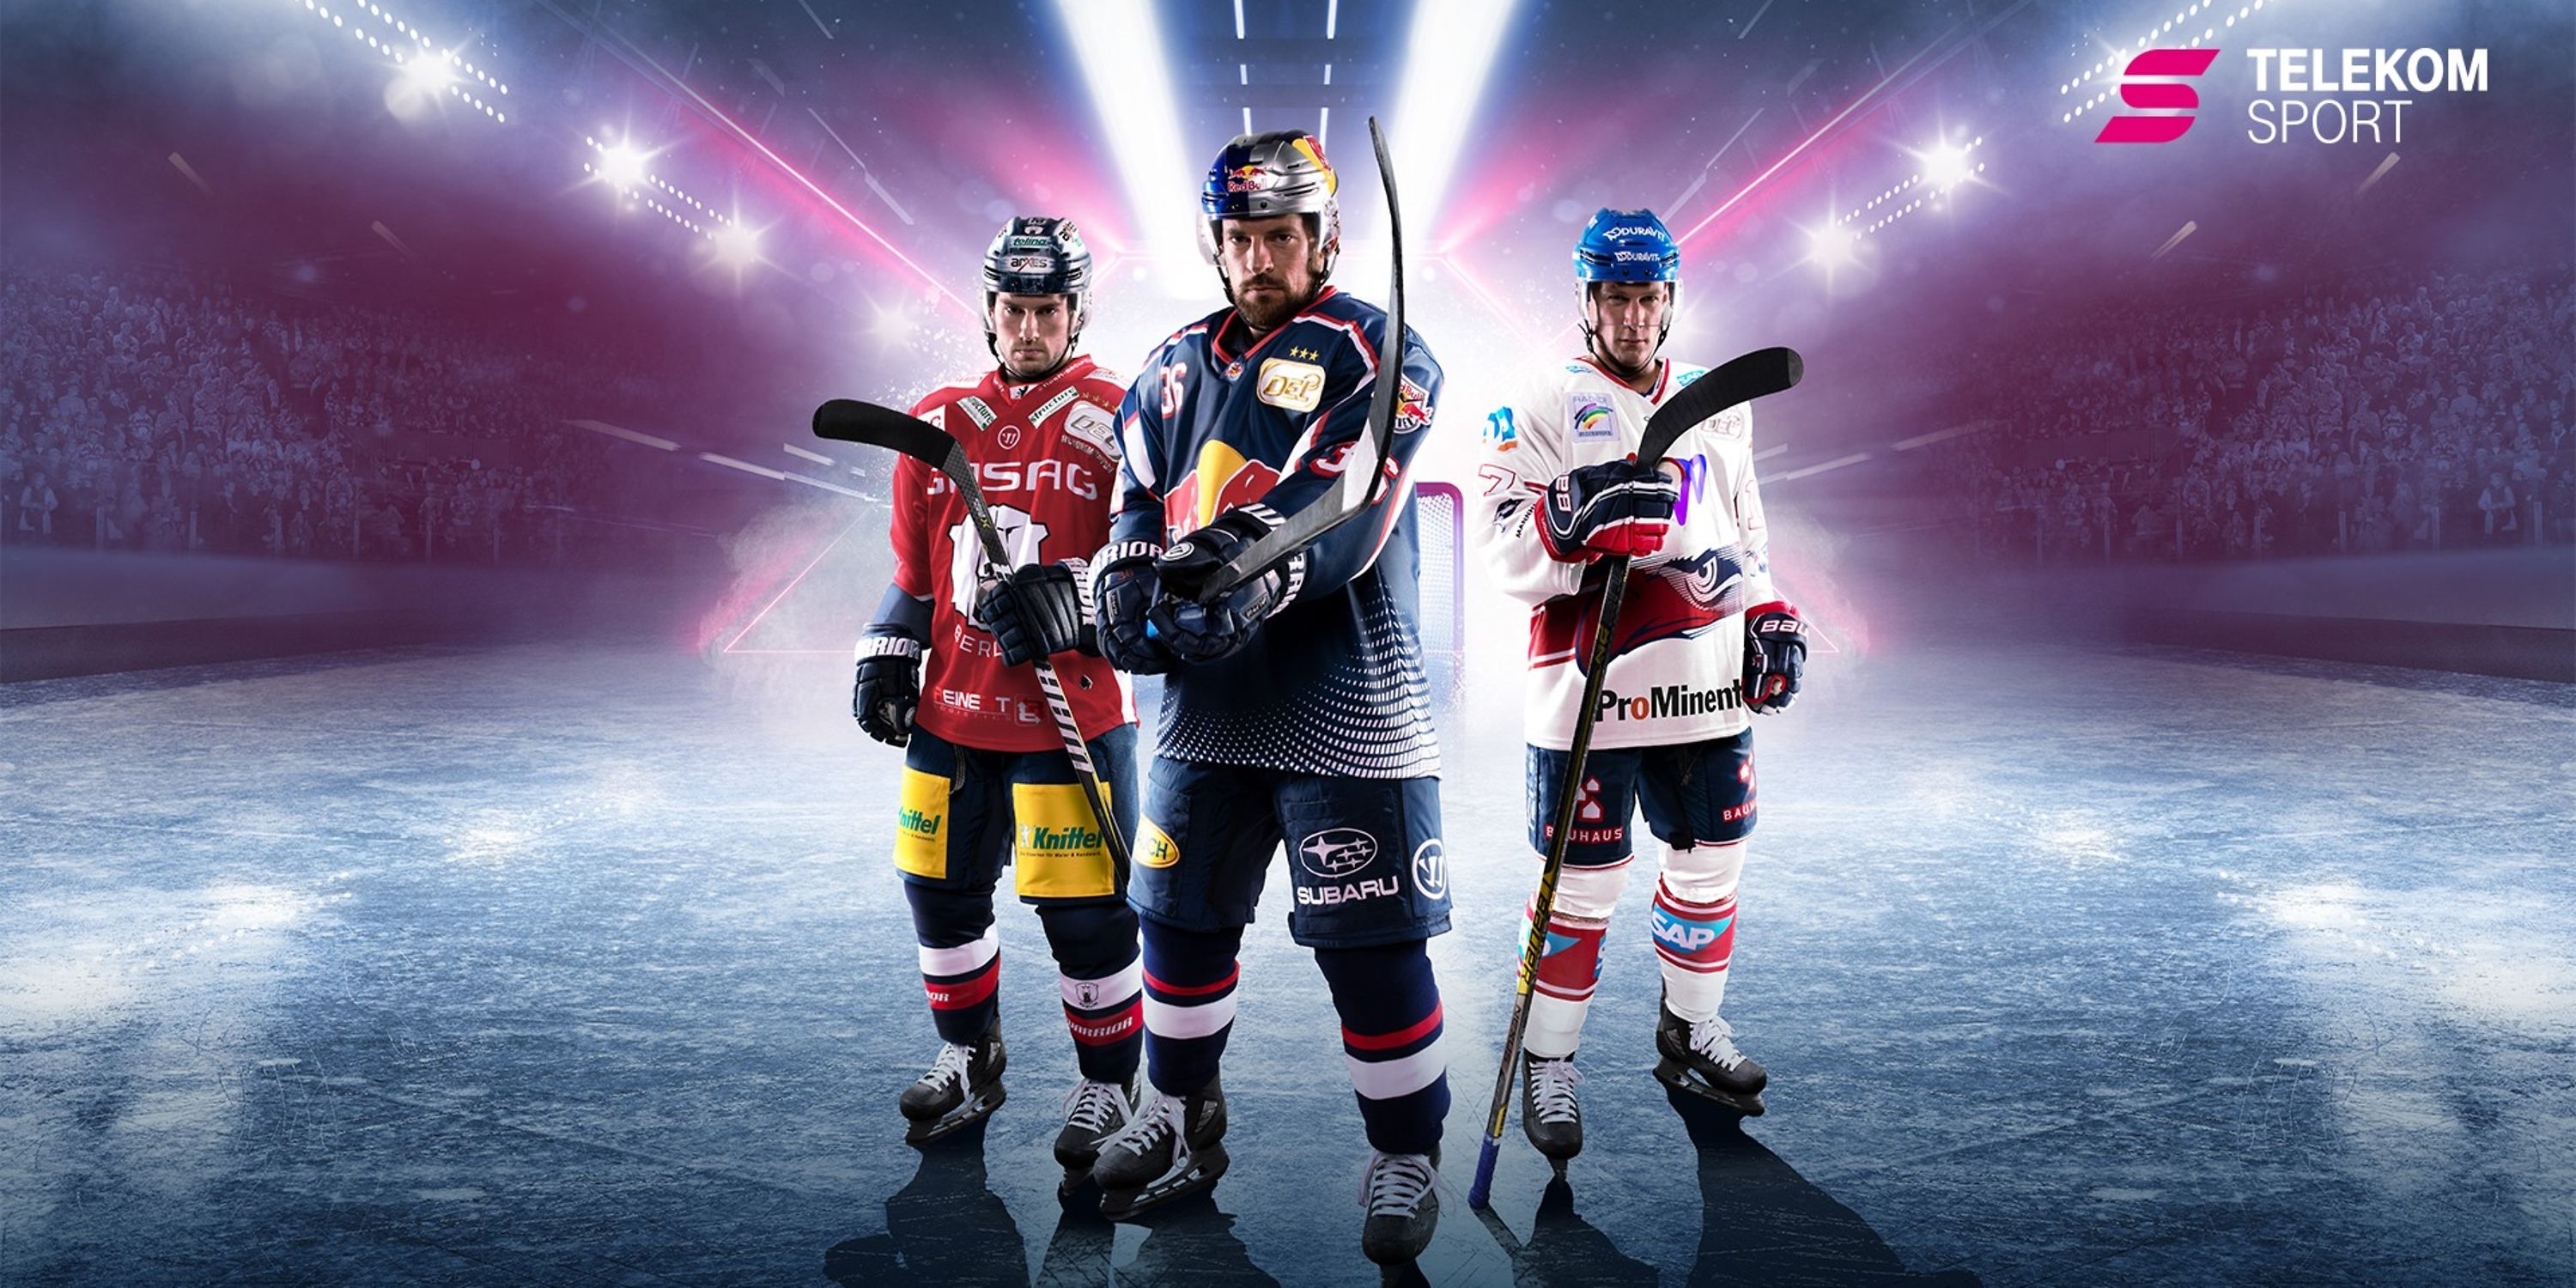 Eishockey Telekom verlängert Partnerschaft mit DEL Deutsche Telekom